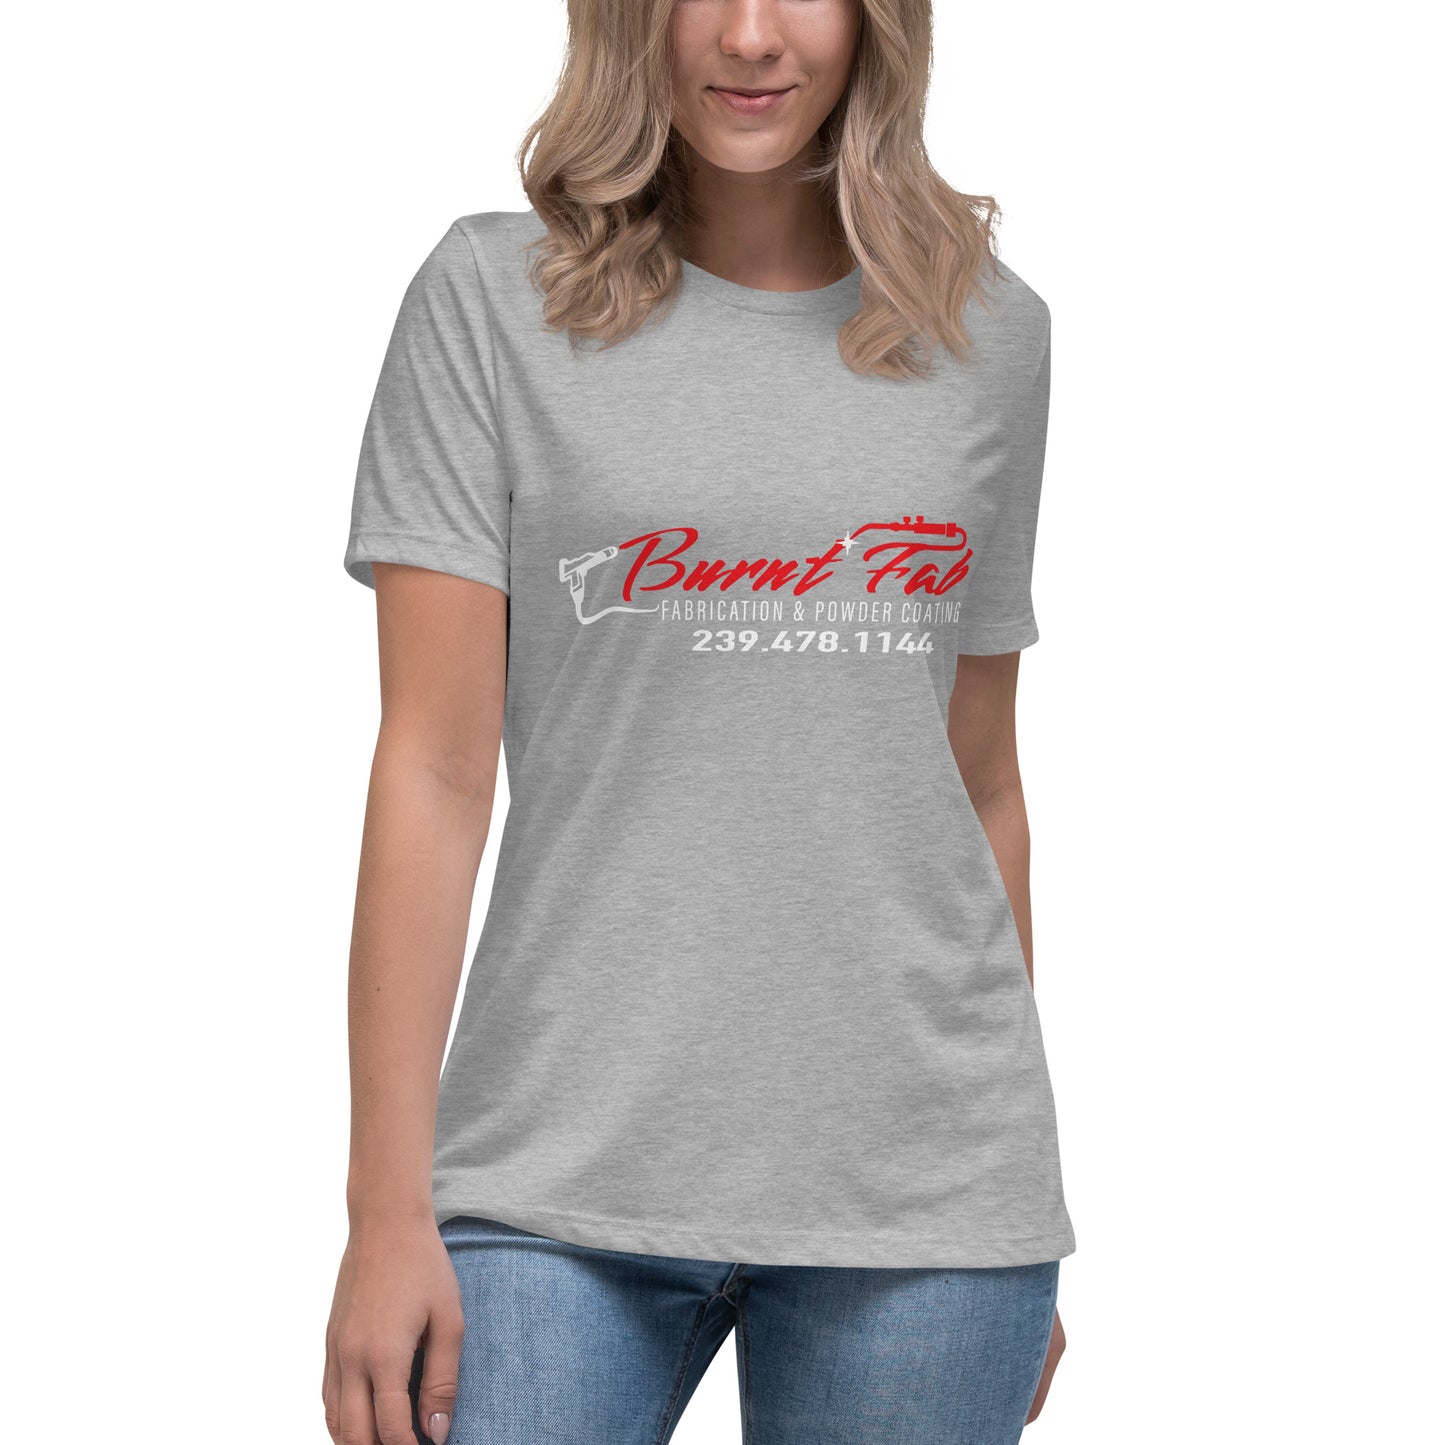 Women's Relaxed Burnt Fab T-Shirt